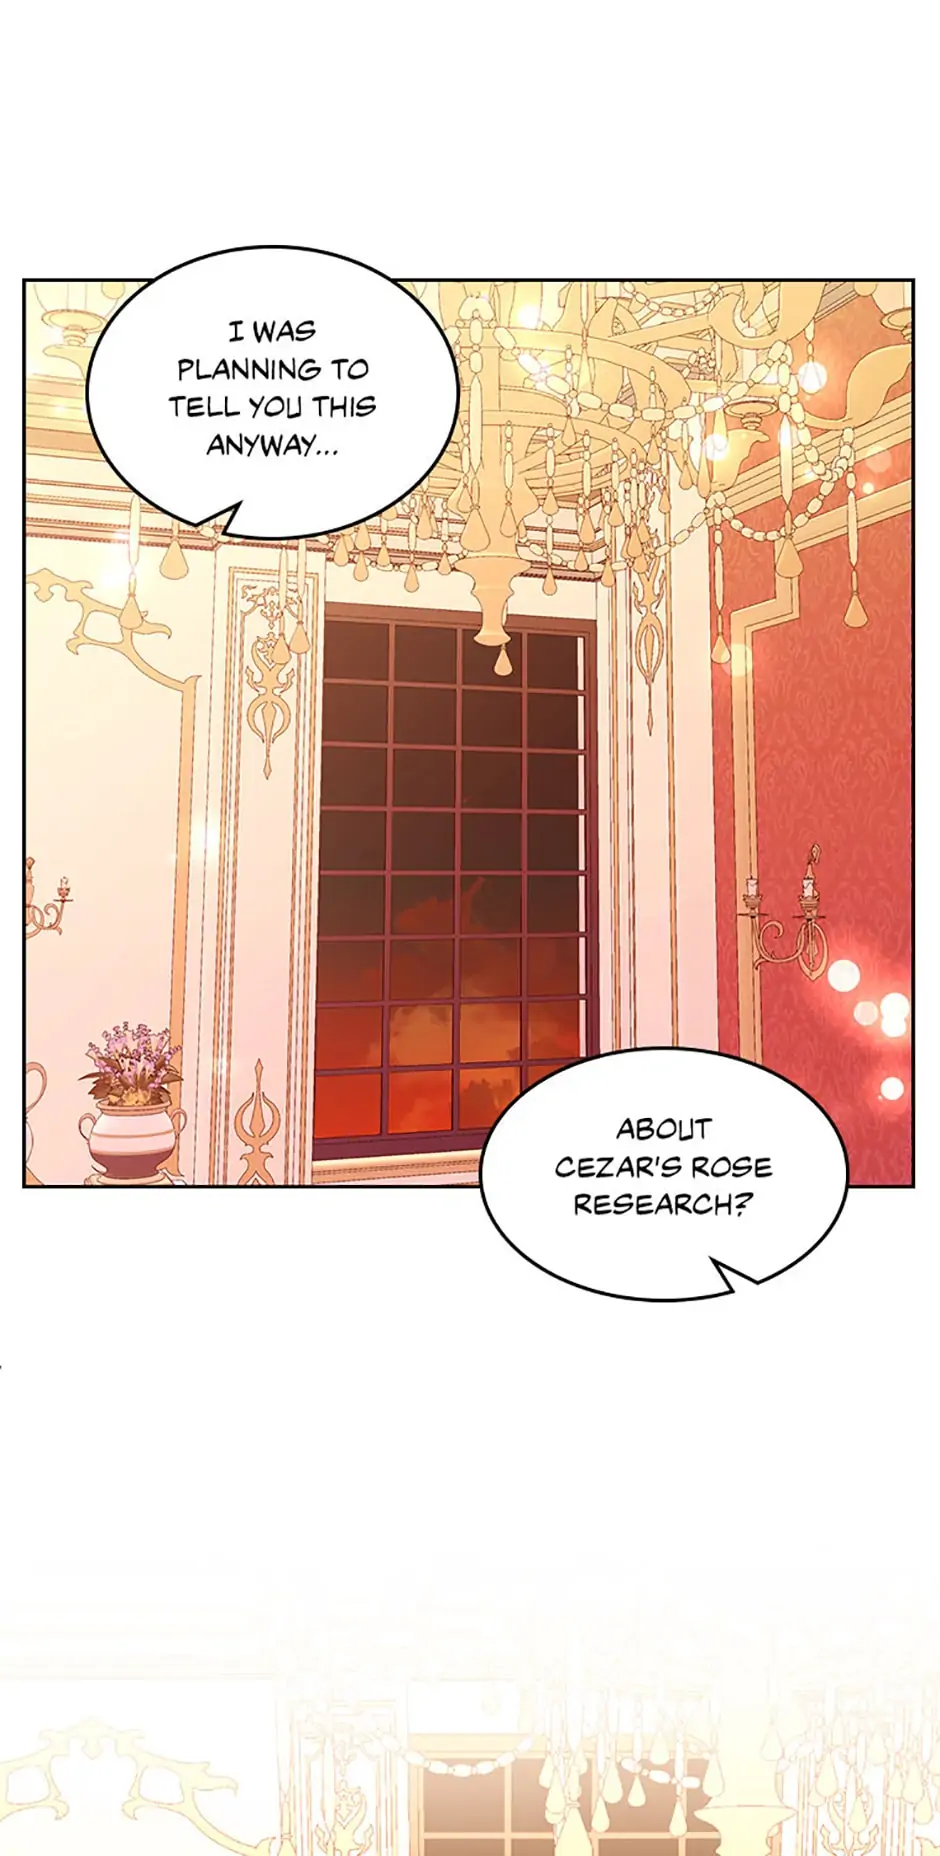 The Duchess’s Secret Dressing Room chapter 26